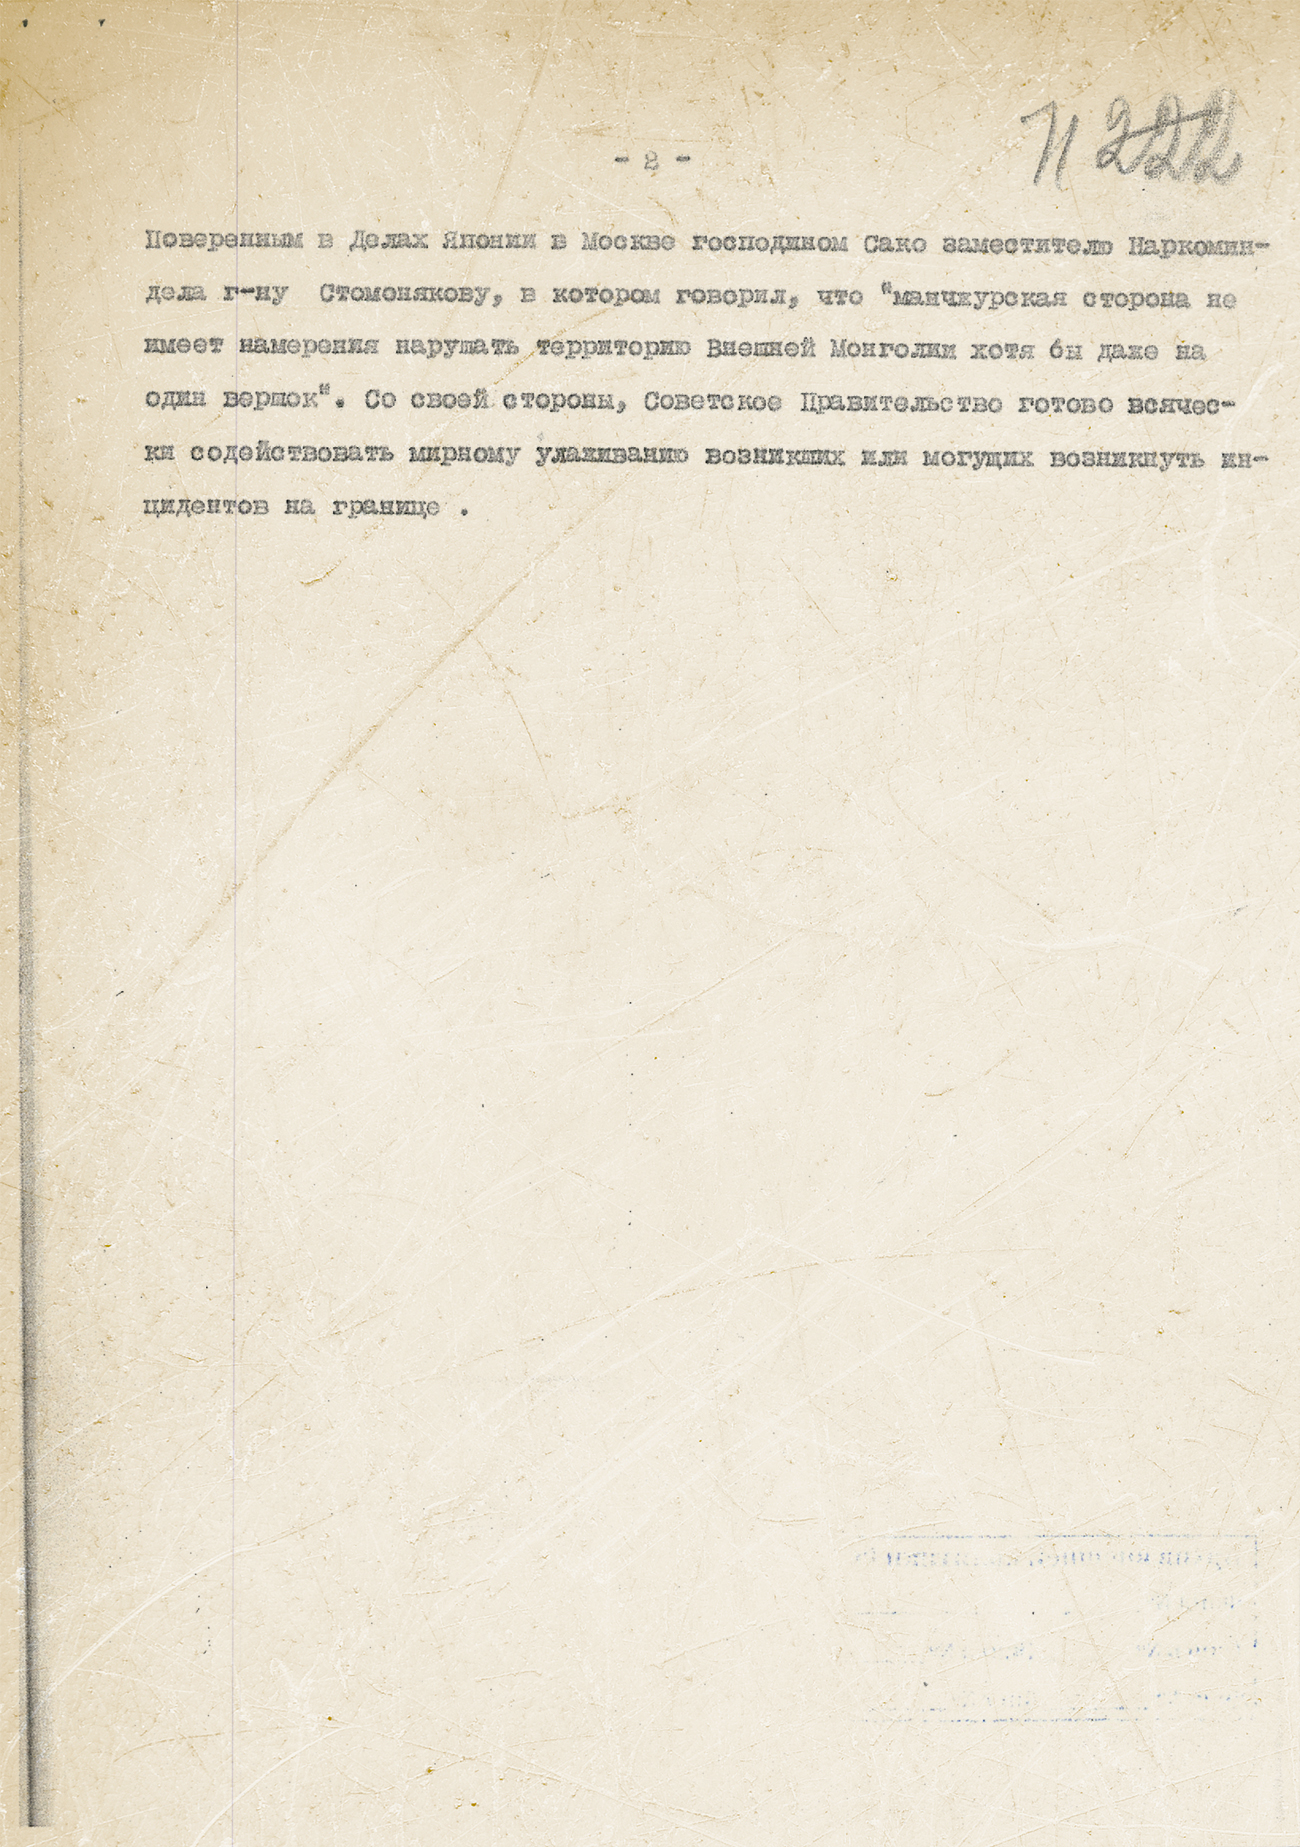 Заявление Советского правительства по инциденту в МНР и Маньчжоу-Го 6 июля 1935 года